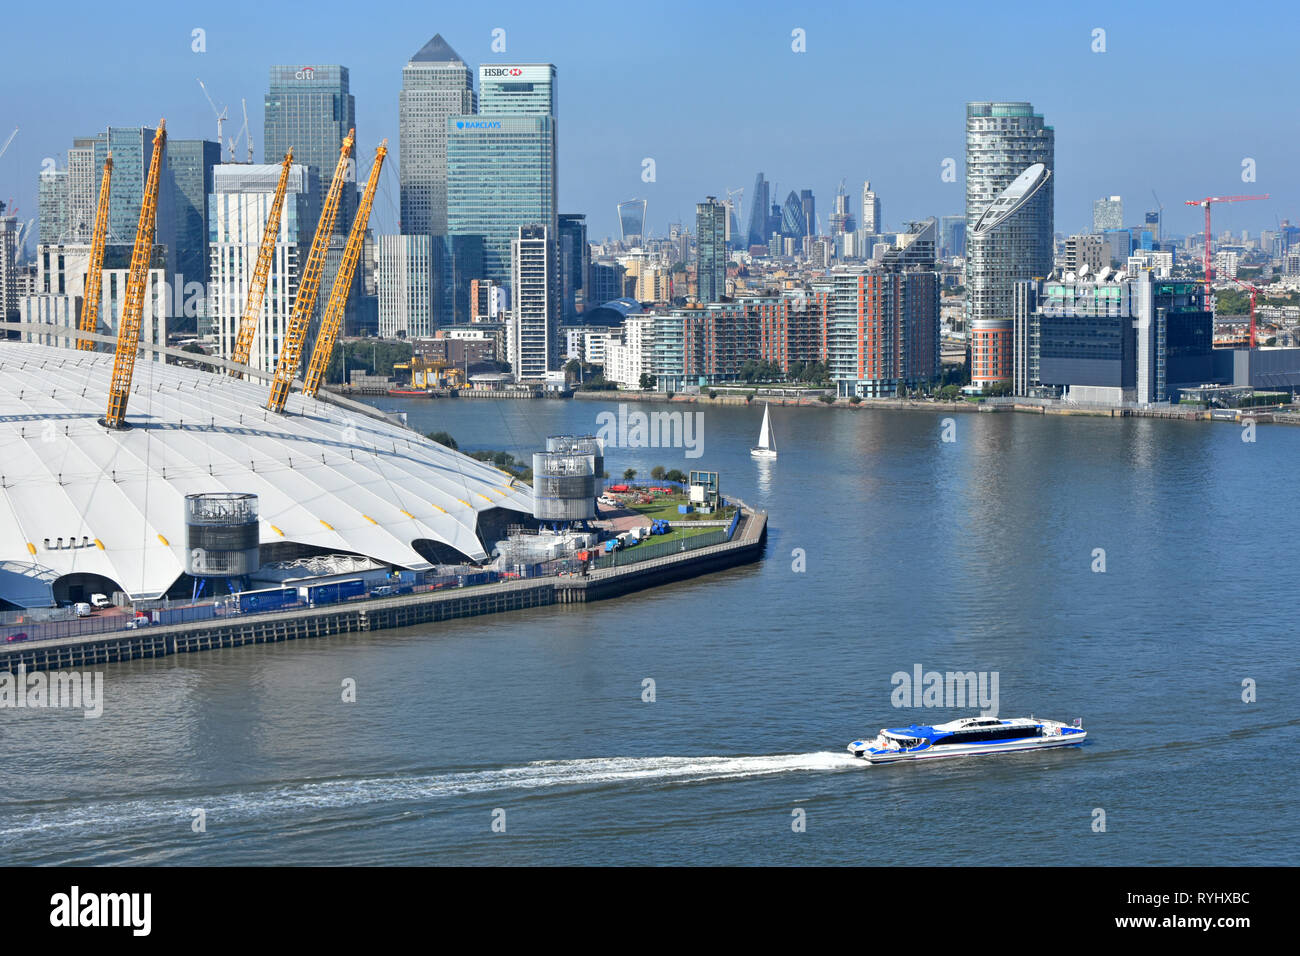 Vue aérienne de haut en bas au niveau de la courbure dans la Tamise avec clipper voile & London Canary Wharf cityscape skyline O2 Arena de Greenwich toit dome UK Banque D'Images